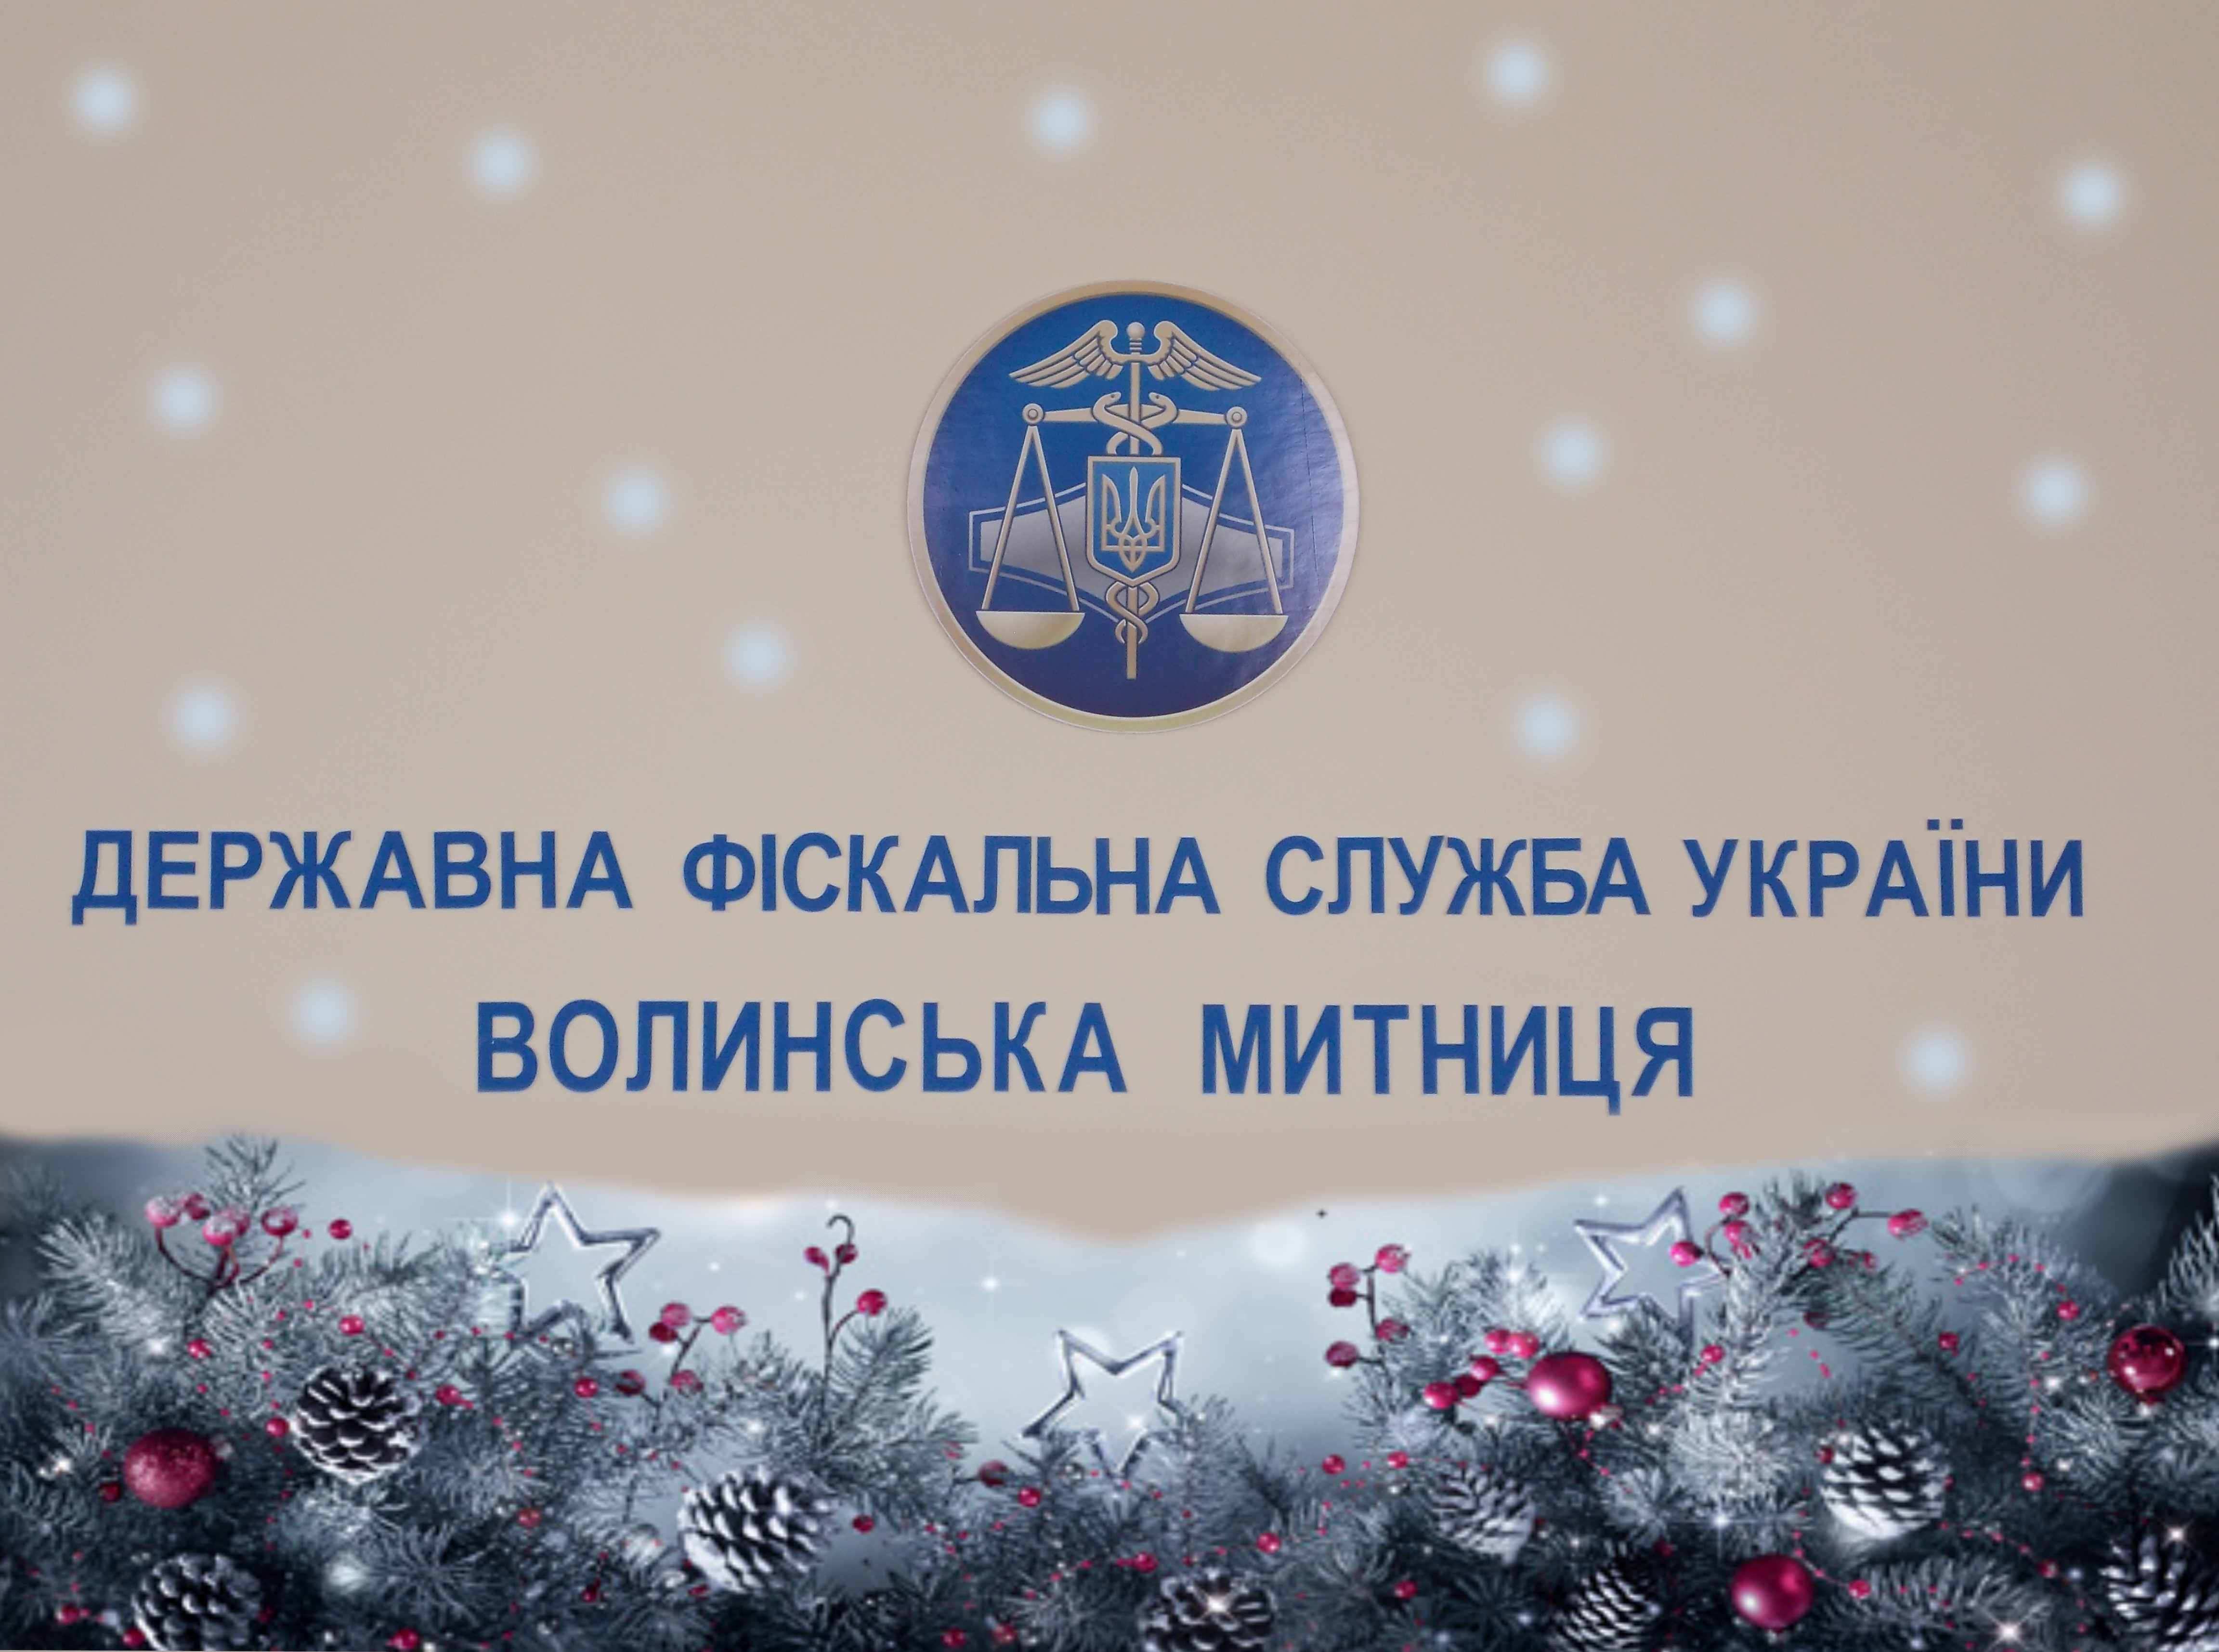 Волинська митниця ДФС вітає з Новим роком та Різдвом Христовим!